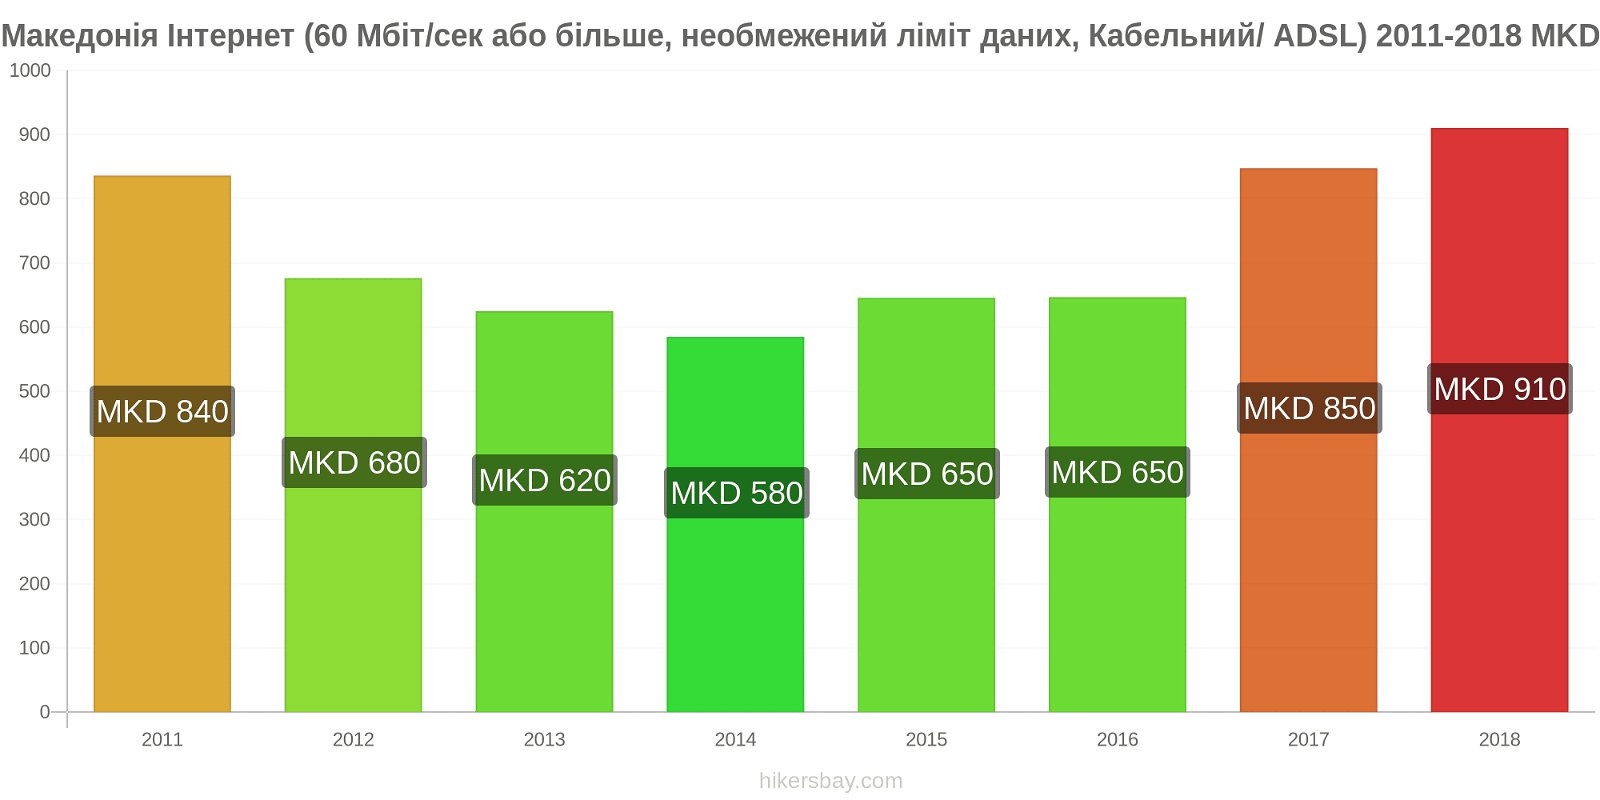 Македонія зміни цін Інтернет (60 Мбіт/с або більше, необмежений ліміт даних, кабель/ADSL) hikersbay.com